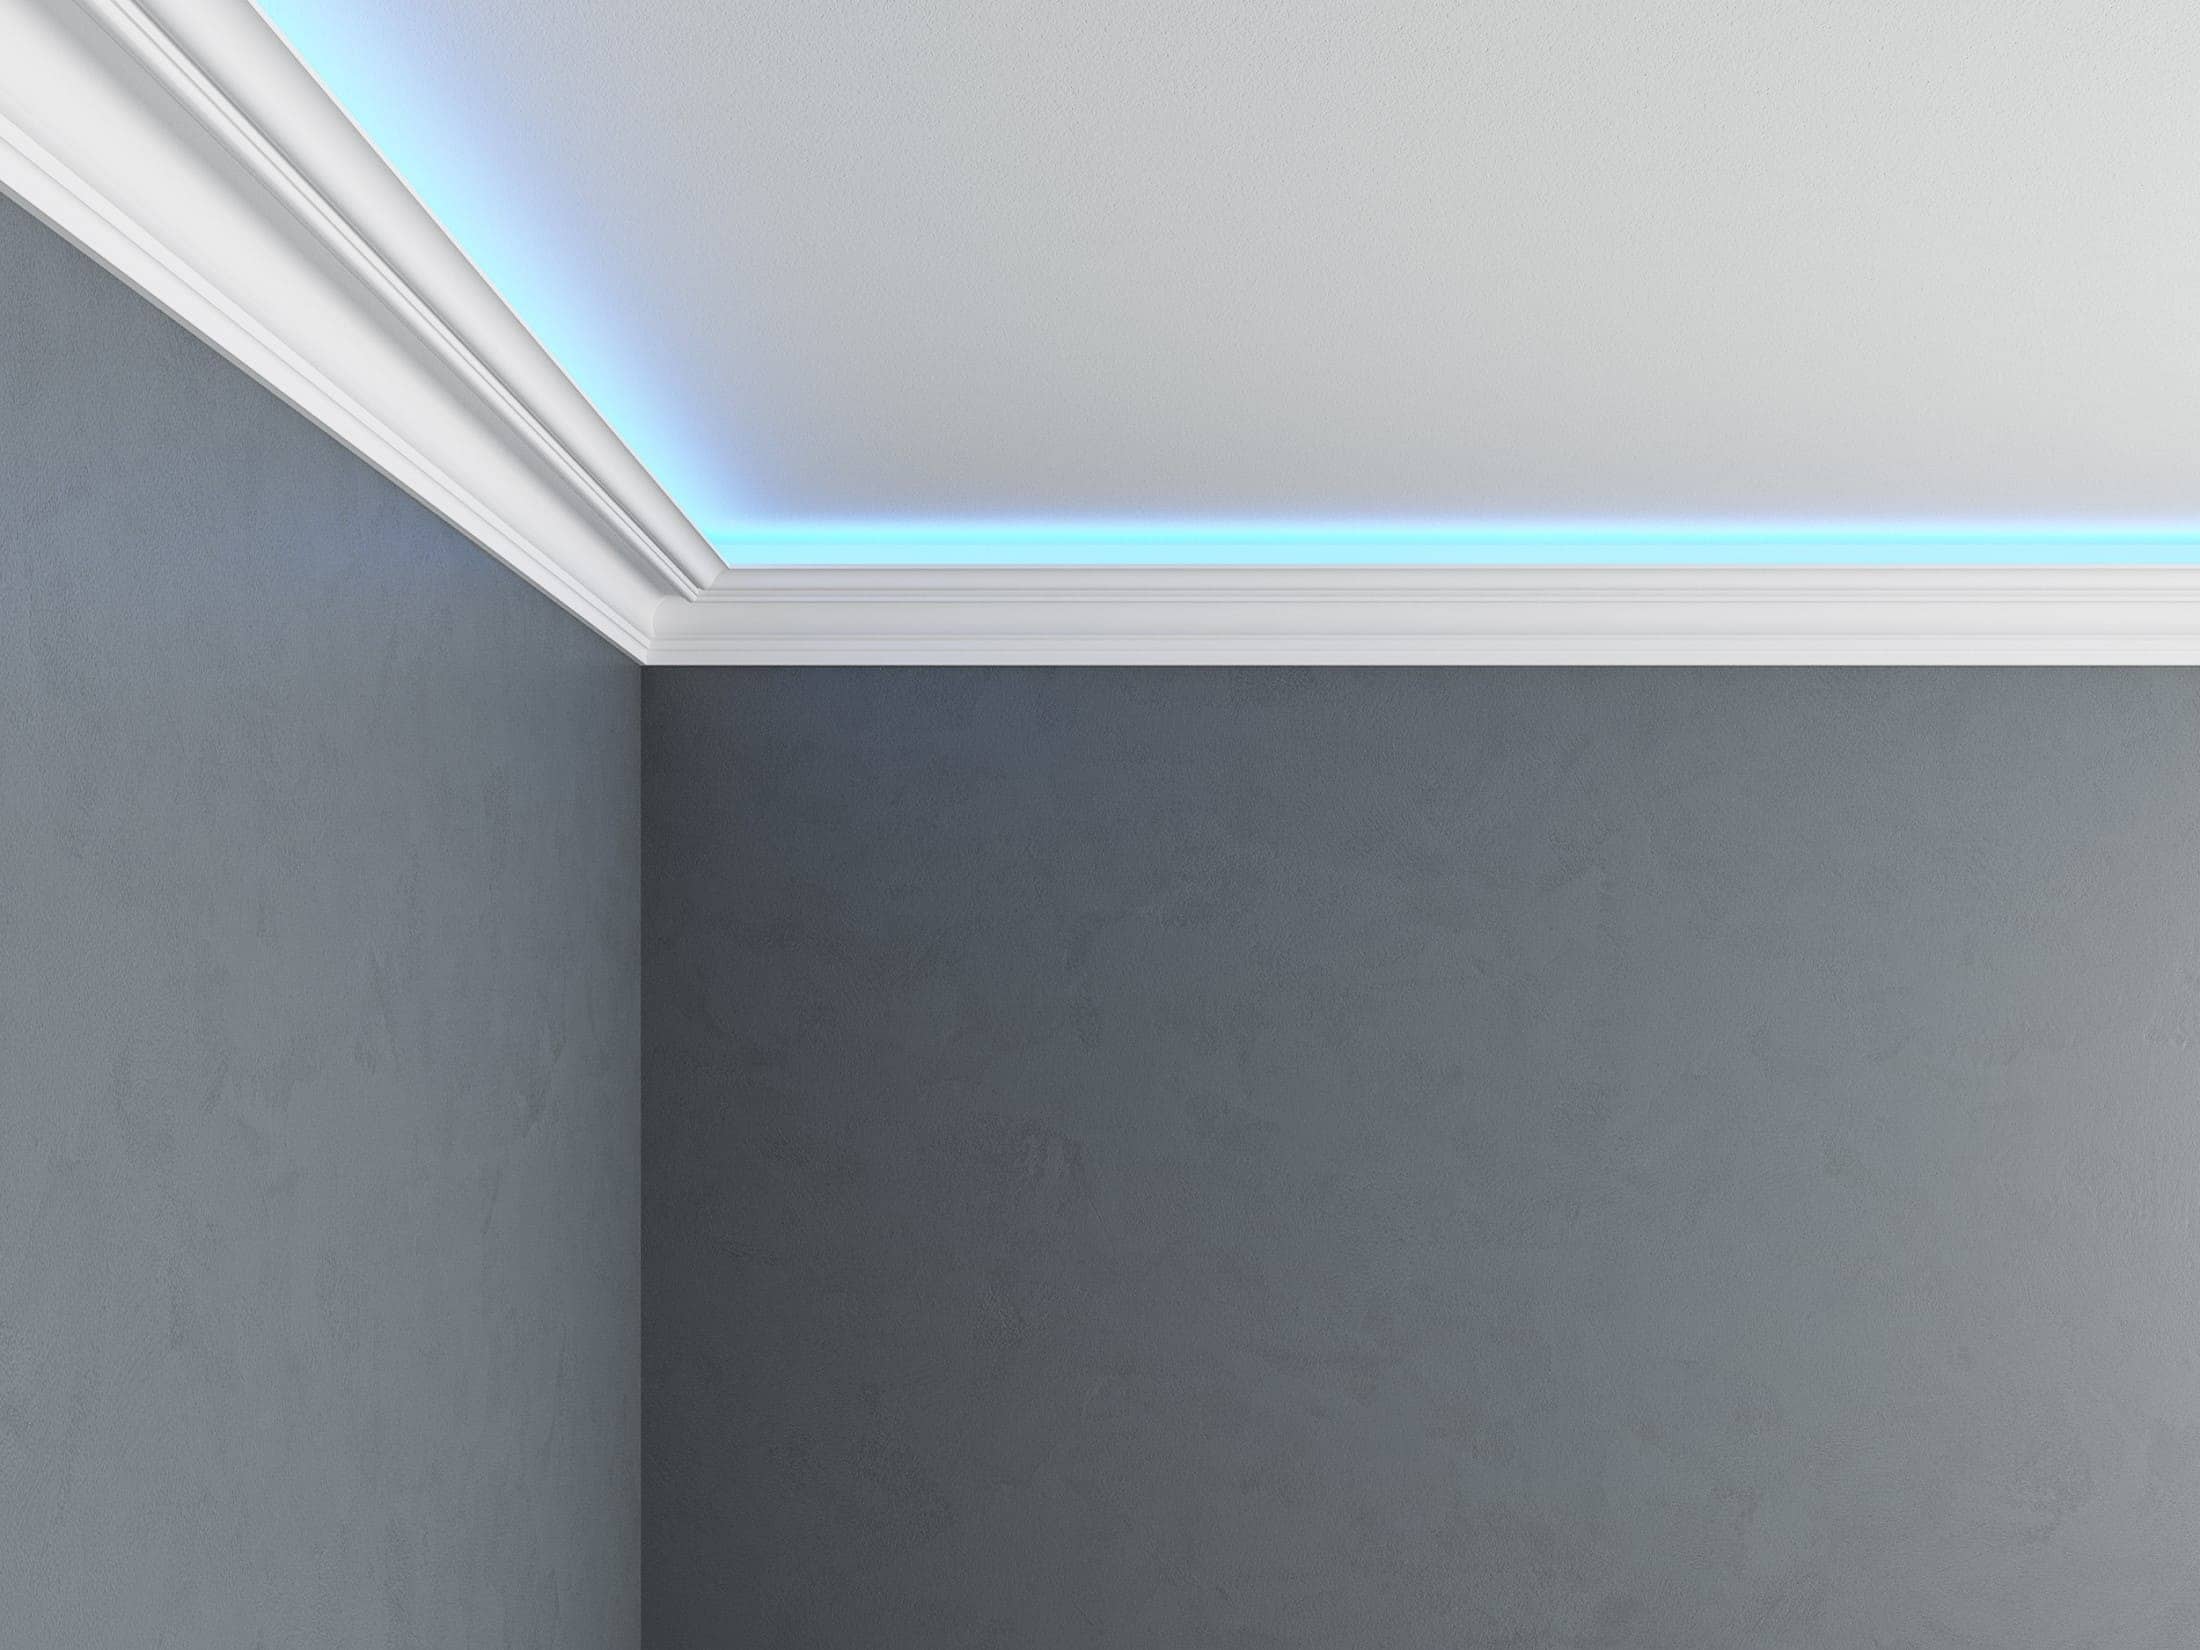 LED w korytarzu musi być umieszczony niezwykle strategicznie.